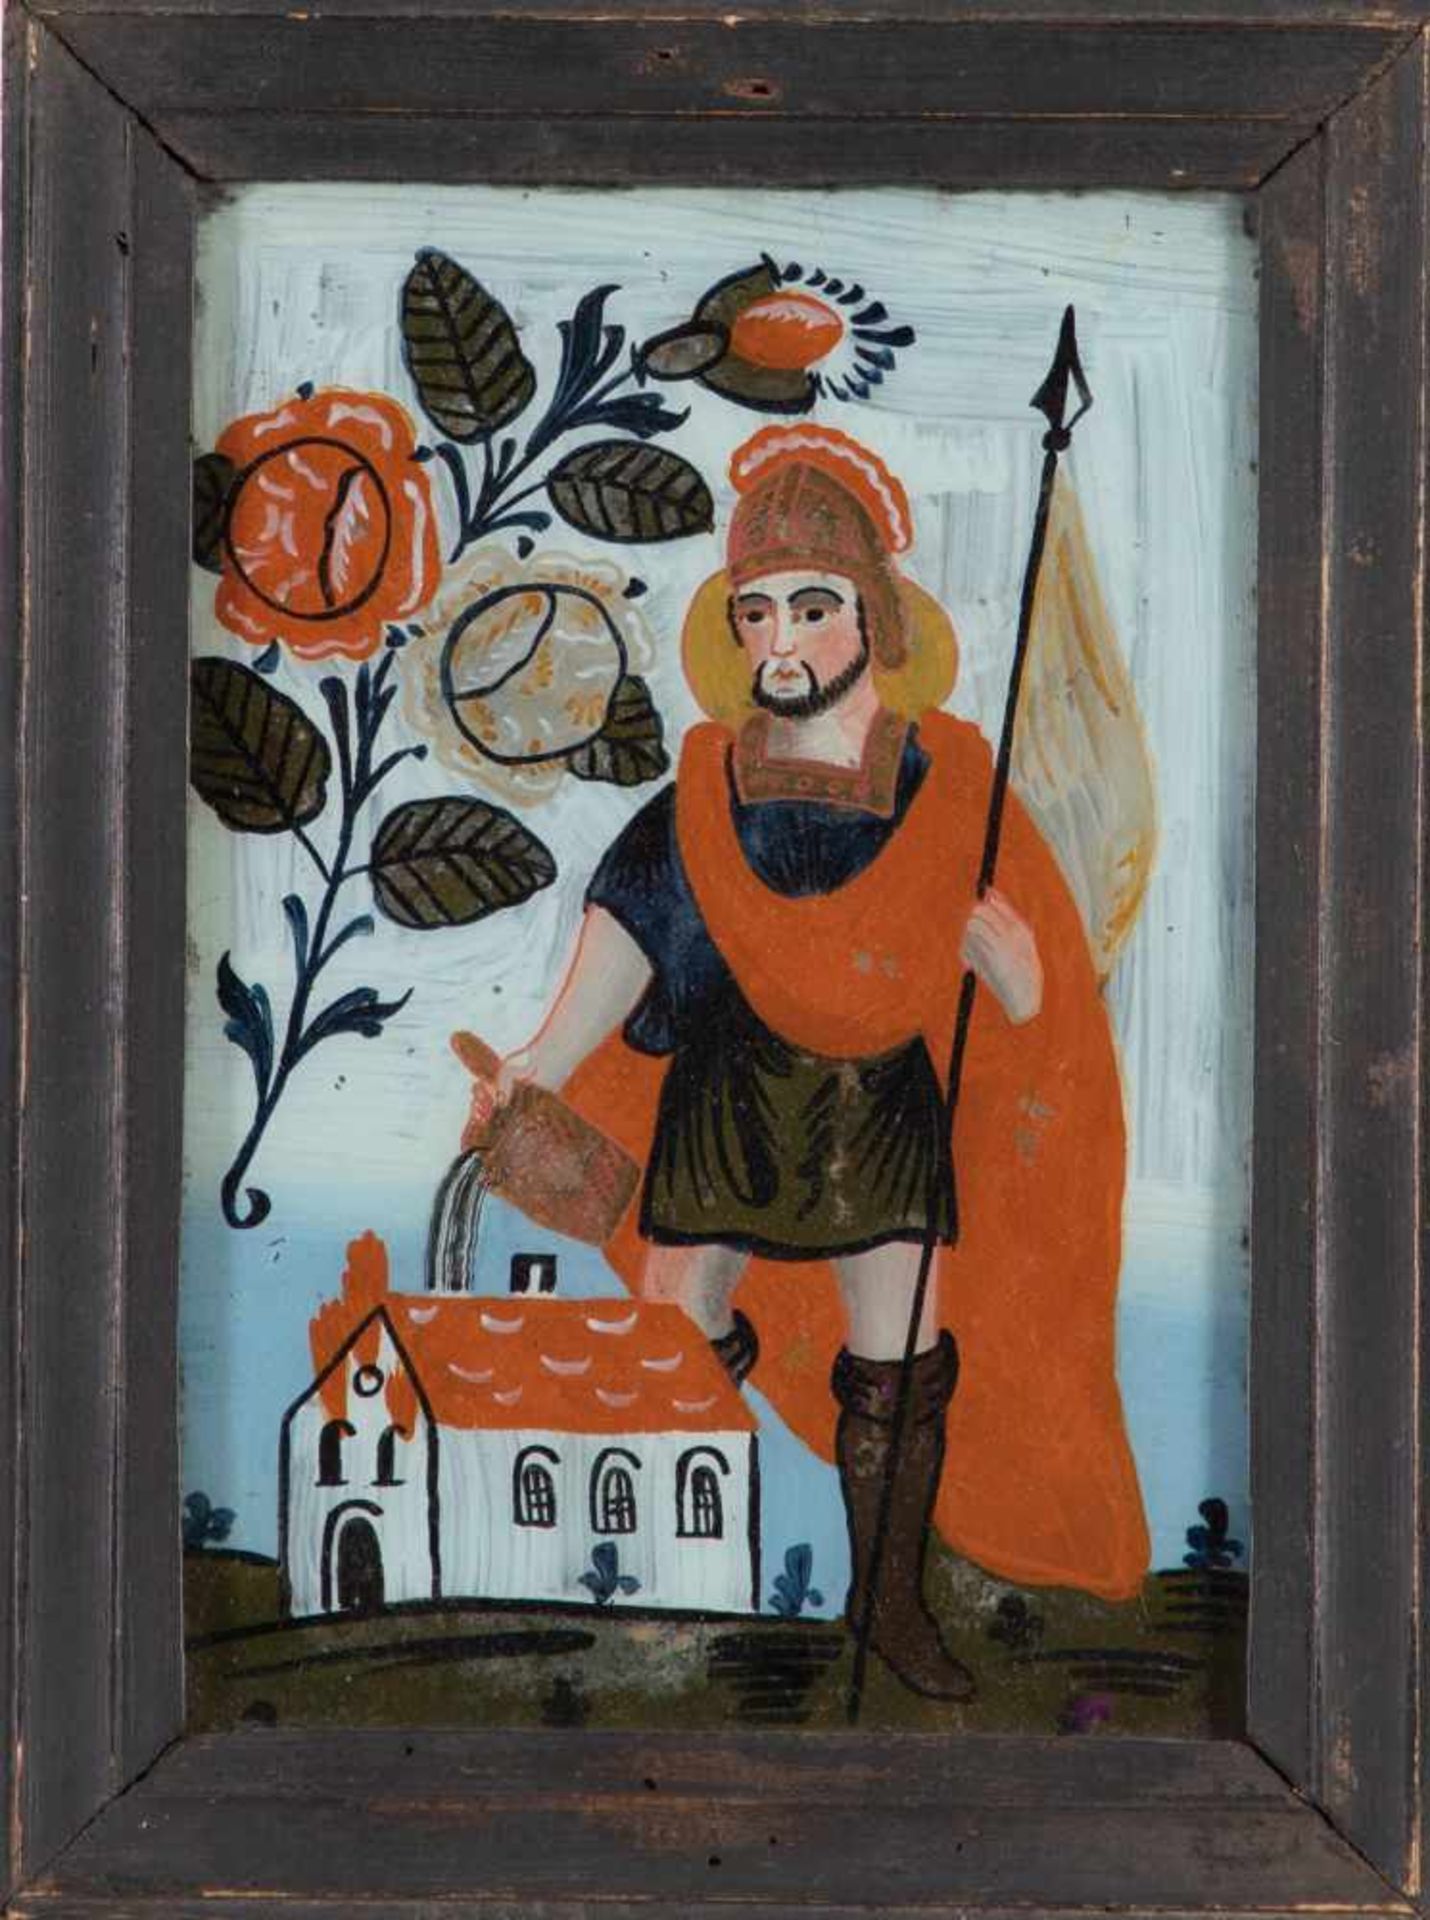 Hinterglasbild mit dem Hl. FlorianSandl, 19. Jh. In bunten, leuchtenden Farben gemalter Heiliger